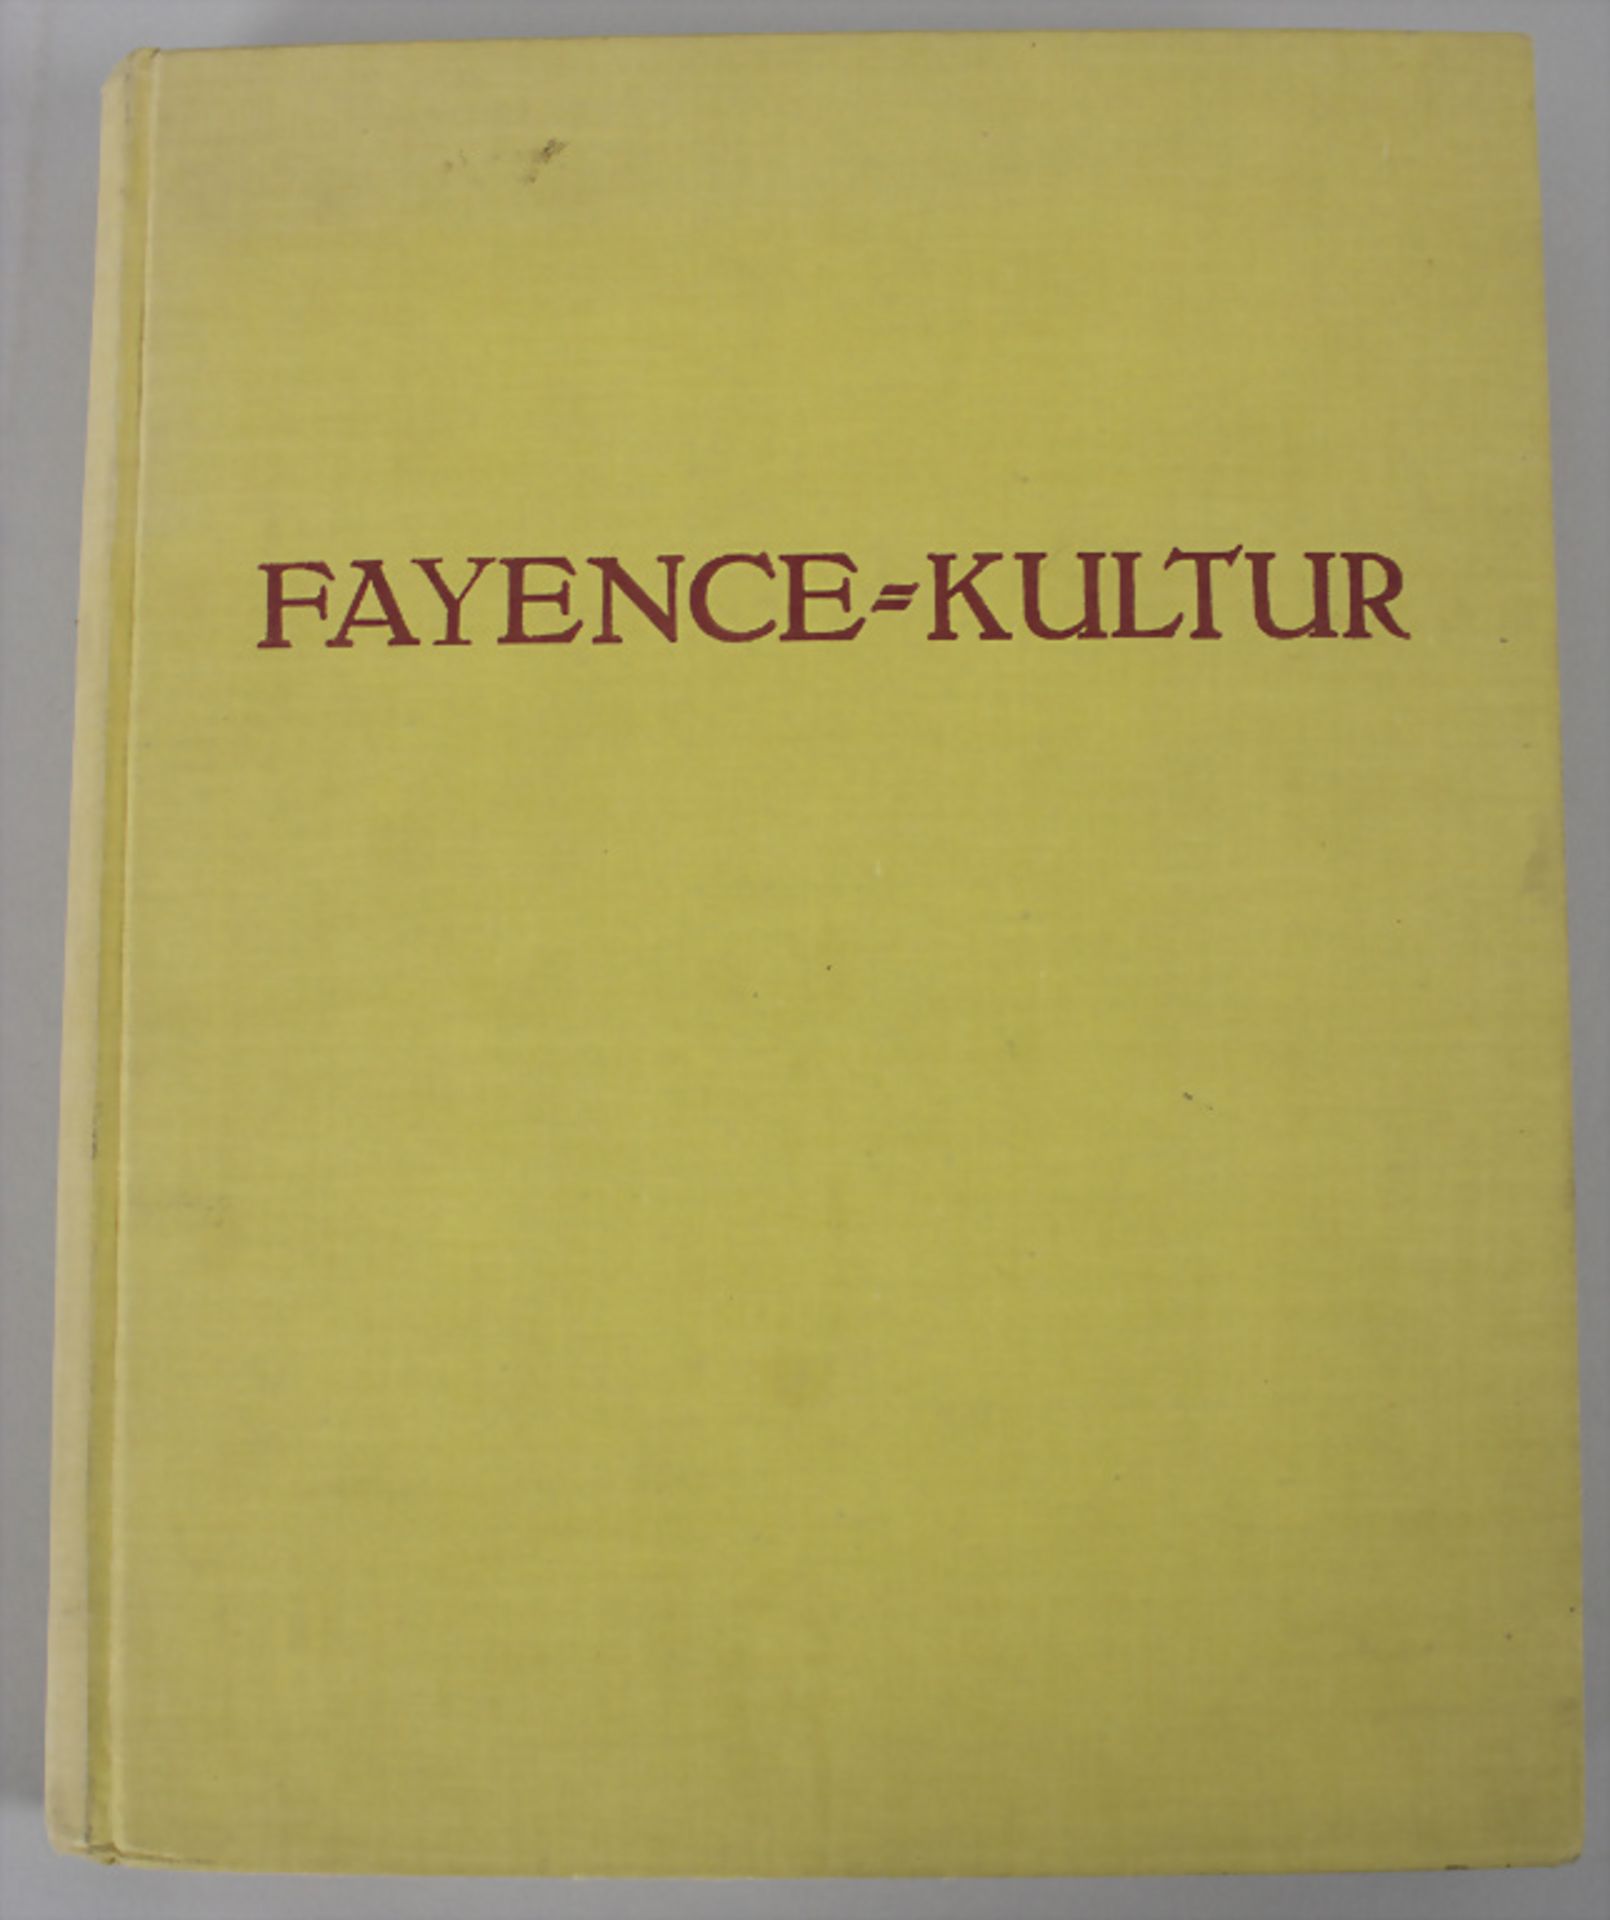 Eduard Fuchs, Paul Heiland: 'Die deutsche Fayence-Kultur', Band 3 München, 1925 - Image 2 of 7